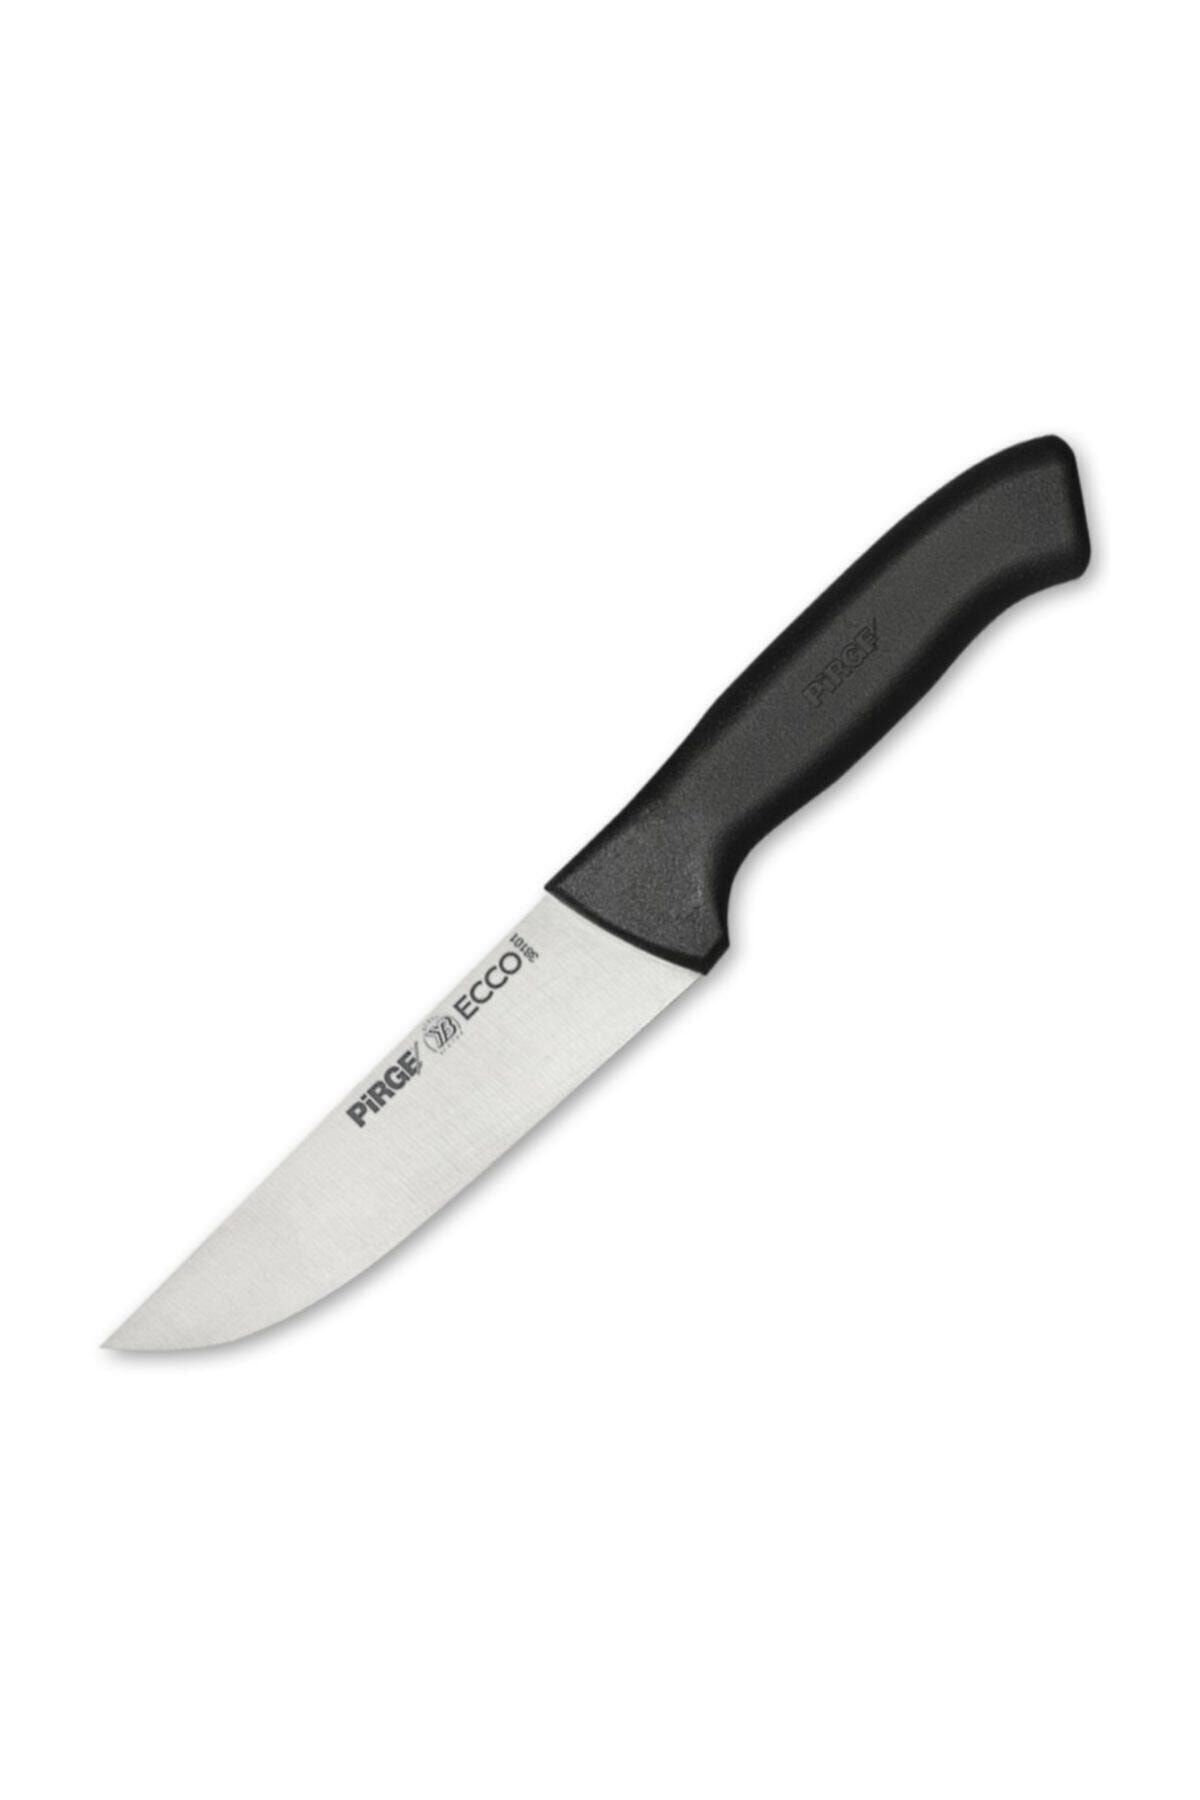 Pirge Ecco Kasap Bıçağı No.1 14,5 Cm.